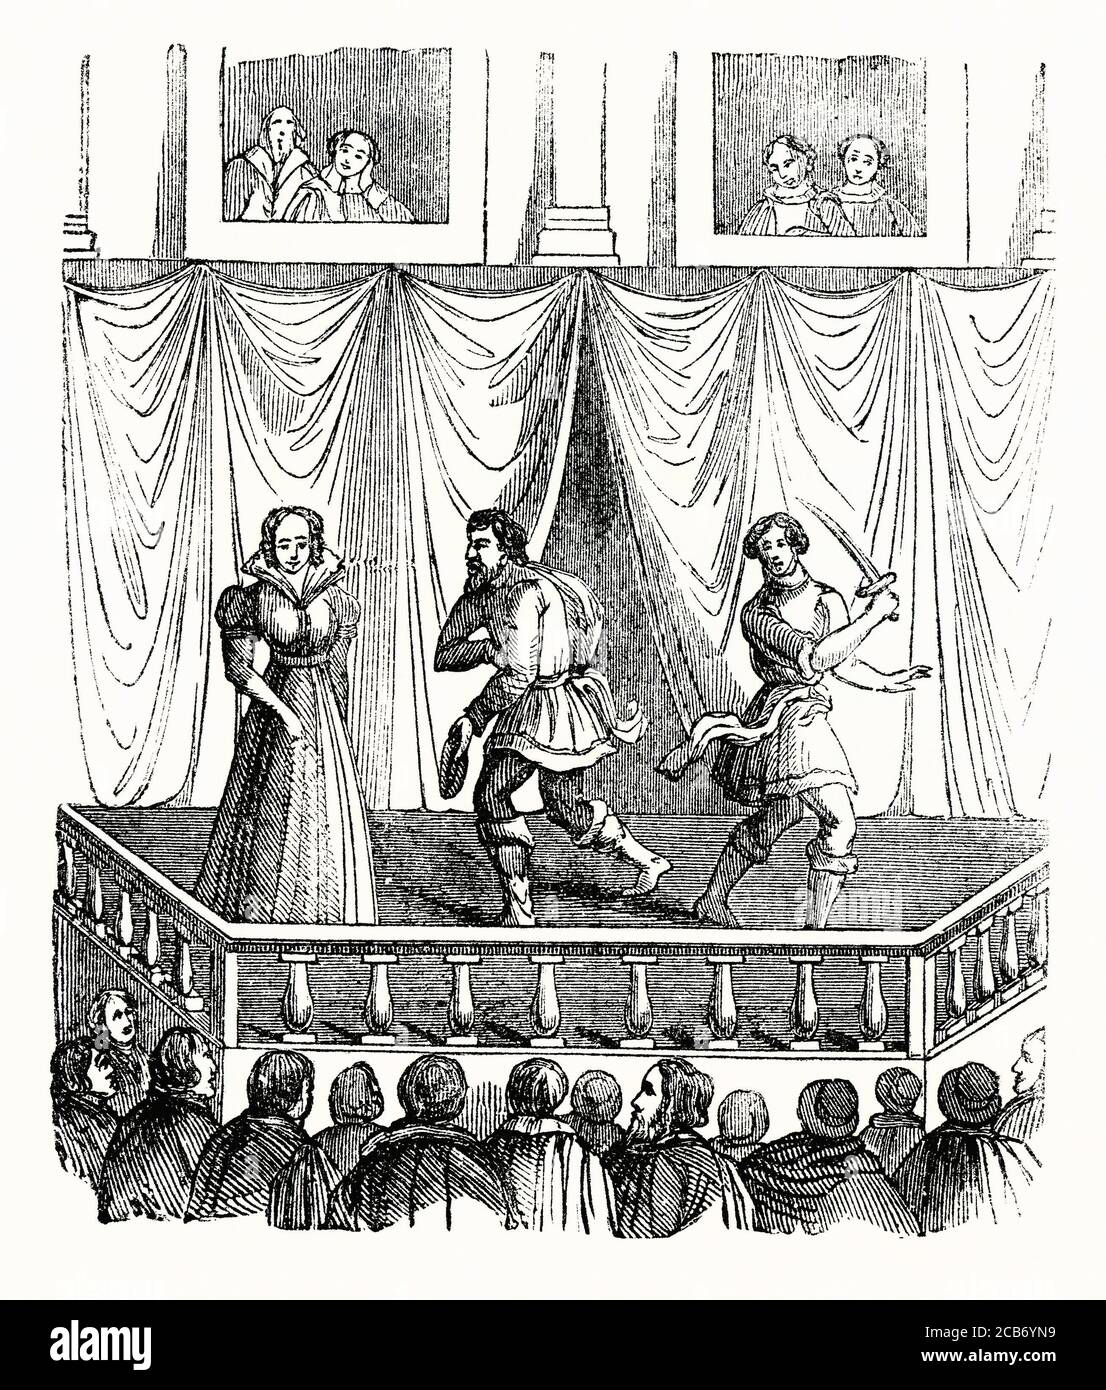 Une vieille gravure montrant une pièce en cours d'exécution en Angleterre, au Royaume-Uni au Moyen-âge. Les spectateurs du théâtre devaient souvent se tenir en plein air (ils étaient connus sous le nom de « Grounlings ») tandis que ceux qui pouvaient se le permettre pouvaient s'asseoir et regarder depuis un balcon (ici en arrière-plan). Banque D'Images